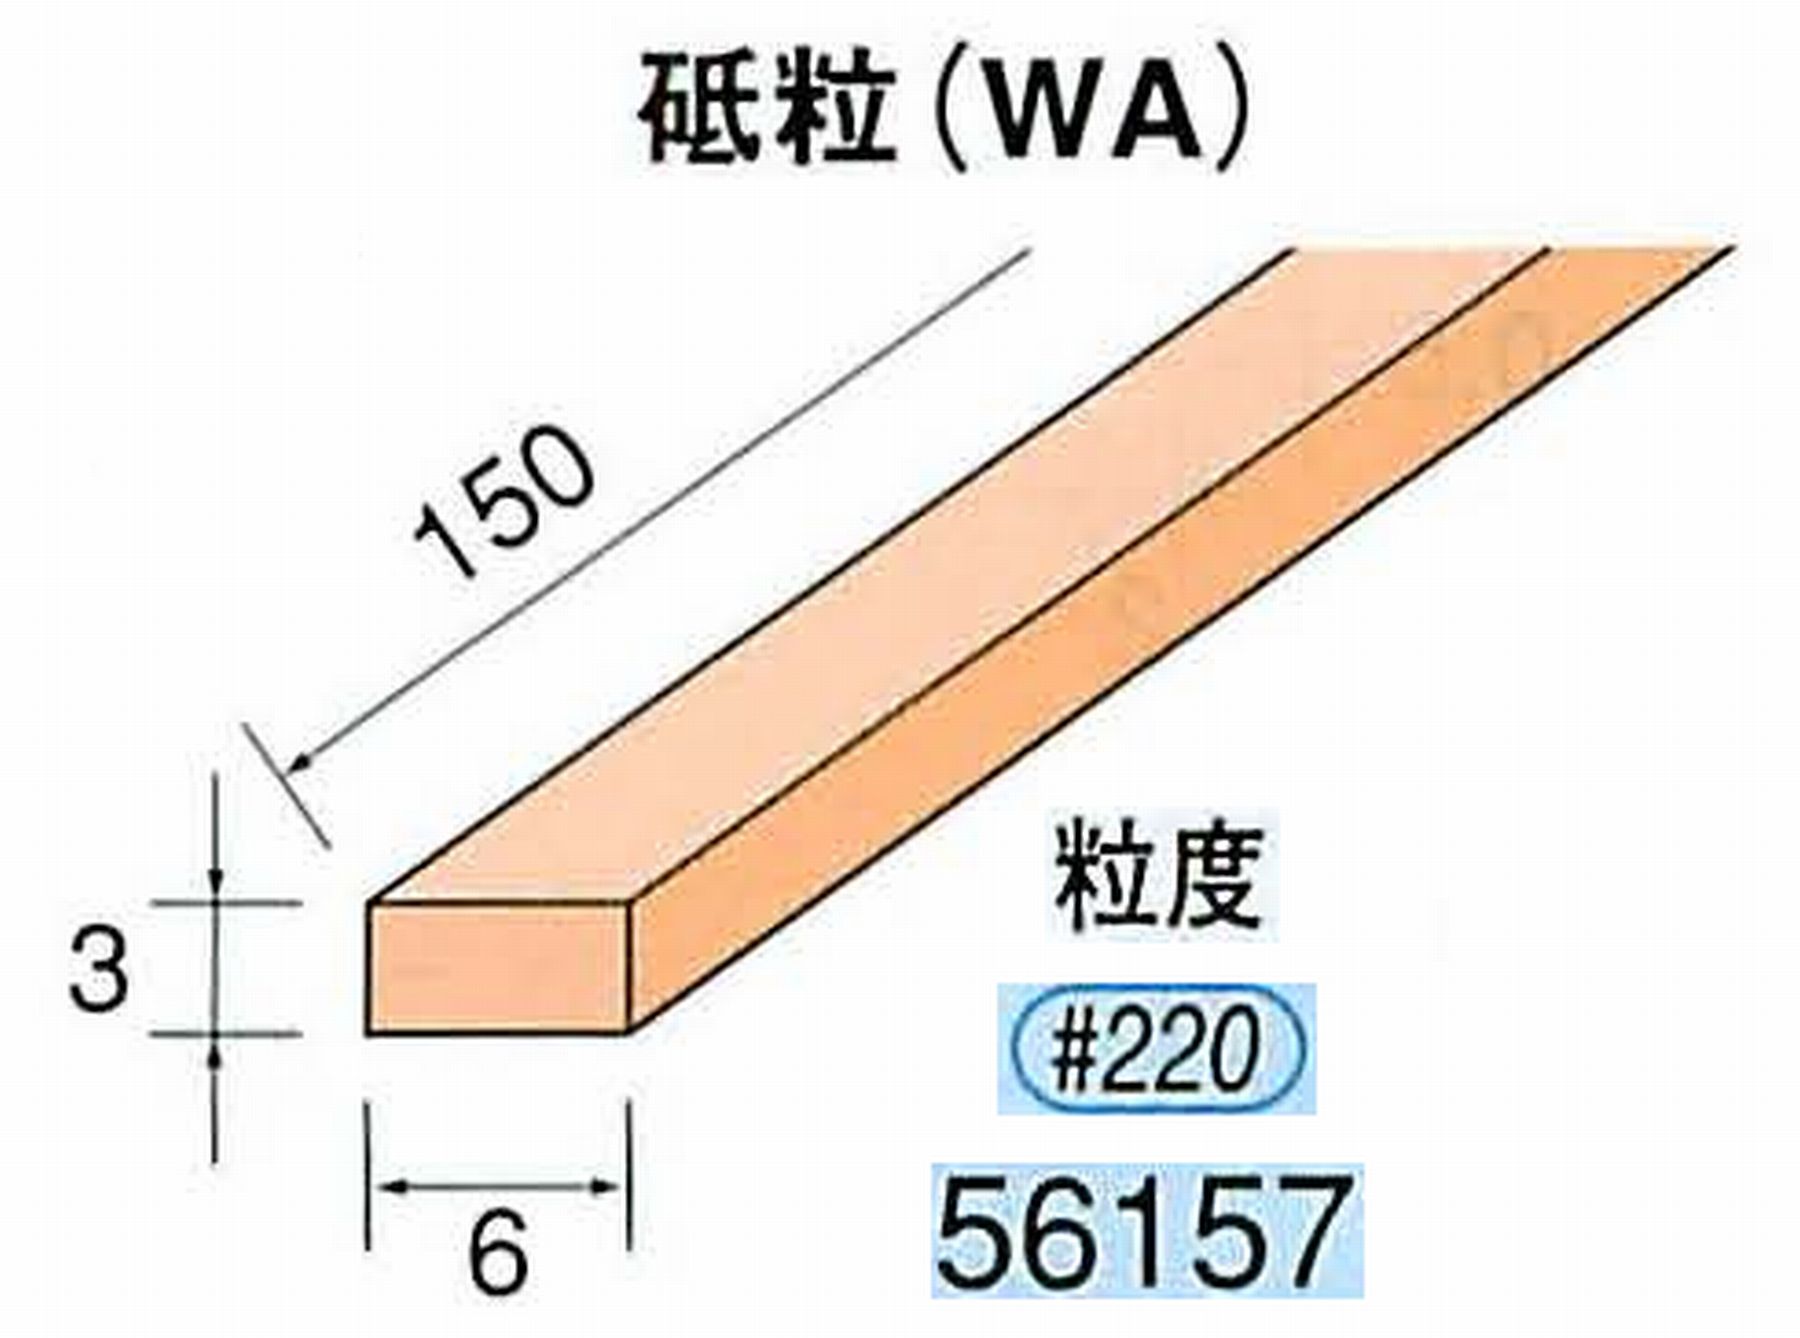 ナカニシ/NAKANISHI スティック砥石 スタンダードシリーズ 砥粒(WA) 56157